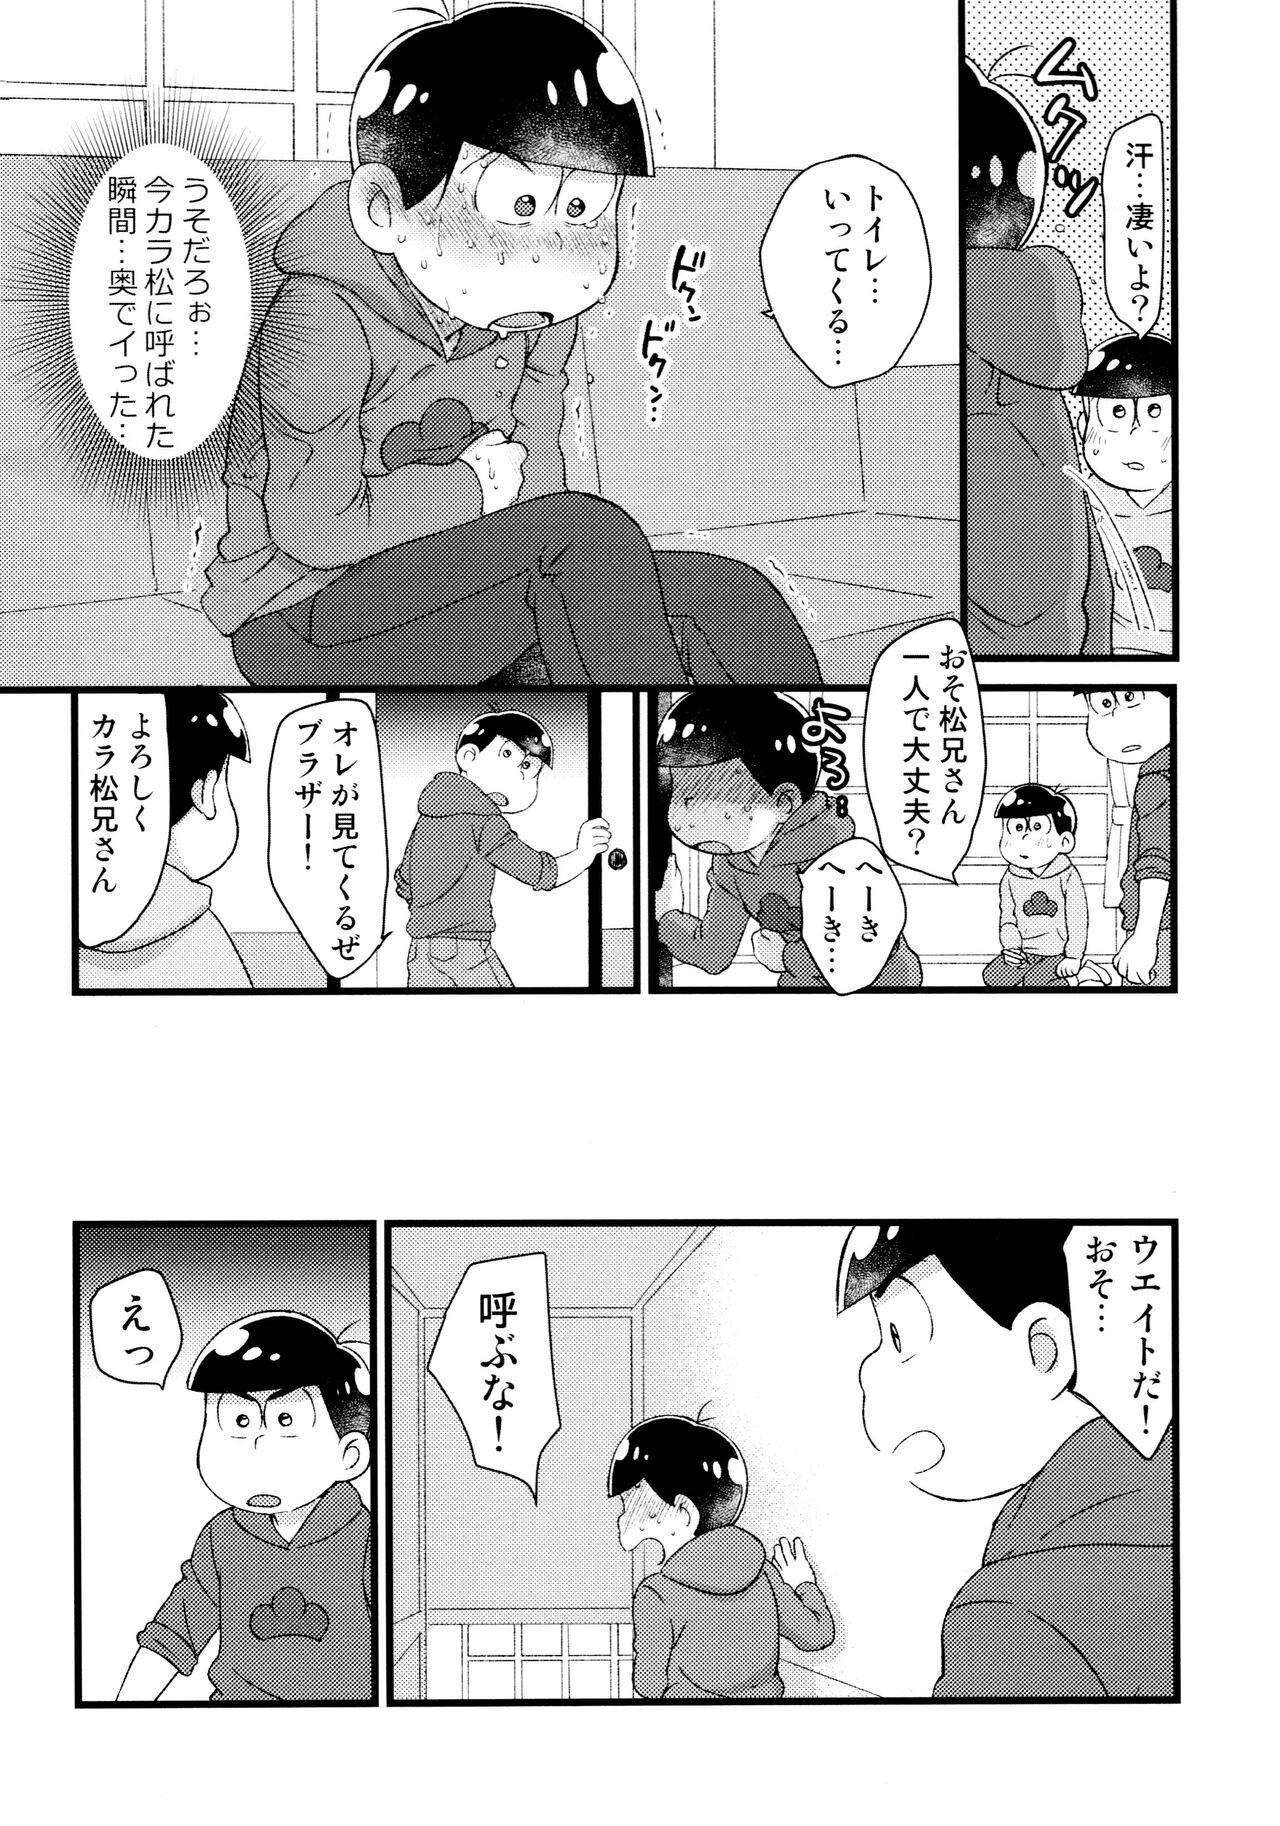 Van omae ga namae o yobu sei de! - Osomatsu san Hot Cunt - Page 8